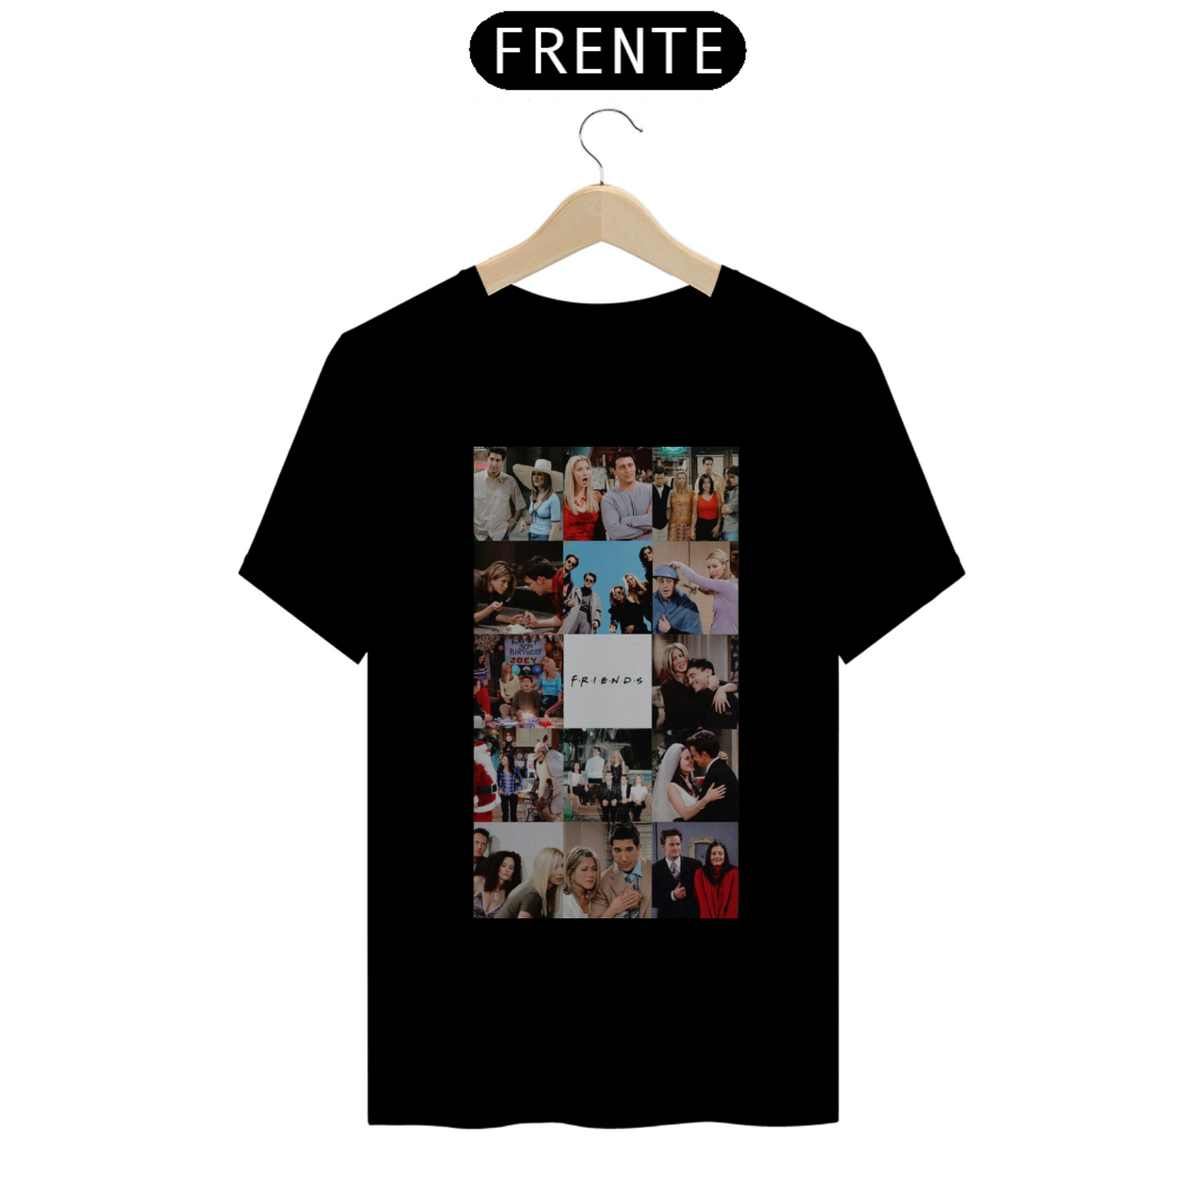 Nome do produto: Camiseta Classica - Friends (imagem)